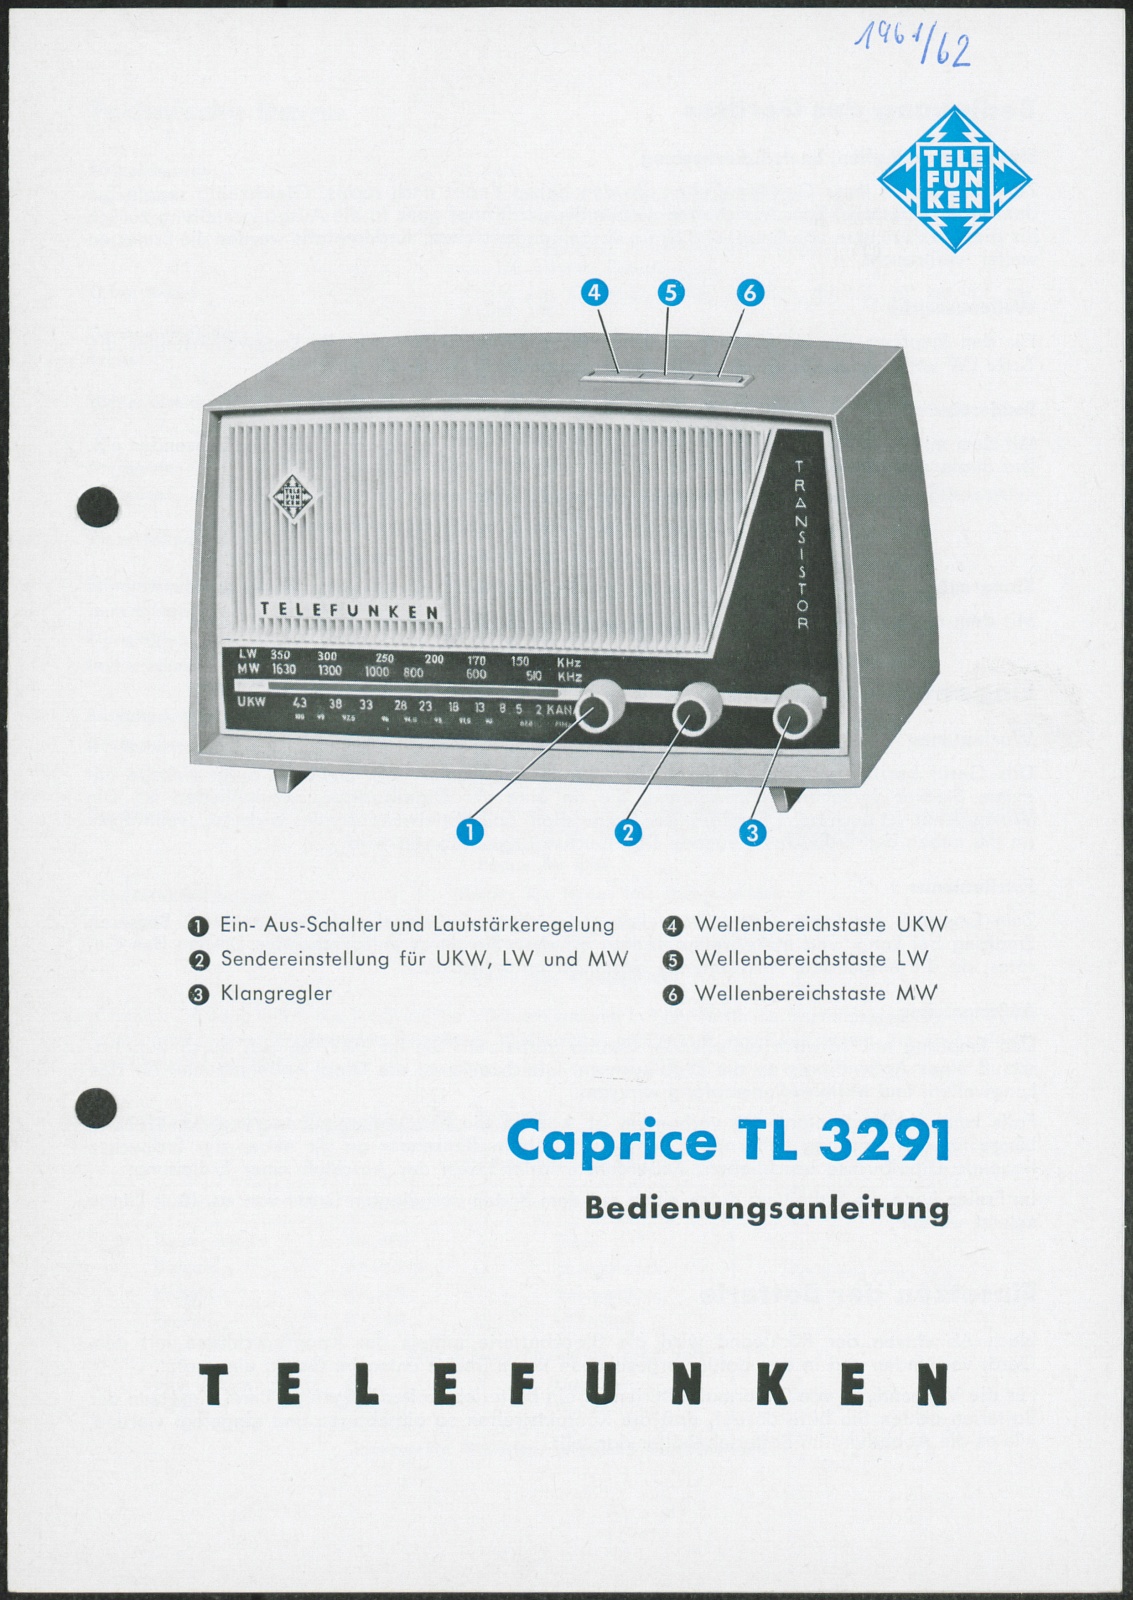 Bedienungsanleitung: Bedienungsanleitung Telefunken Caprice TL 3291 (Stiftung Deutsches Technikmuseum Berlin CC0)